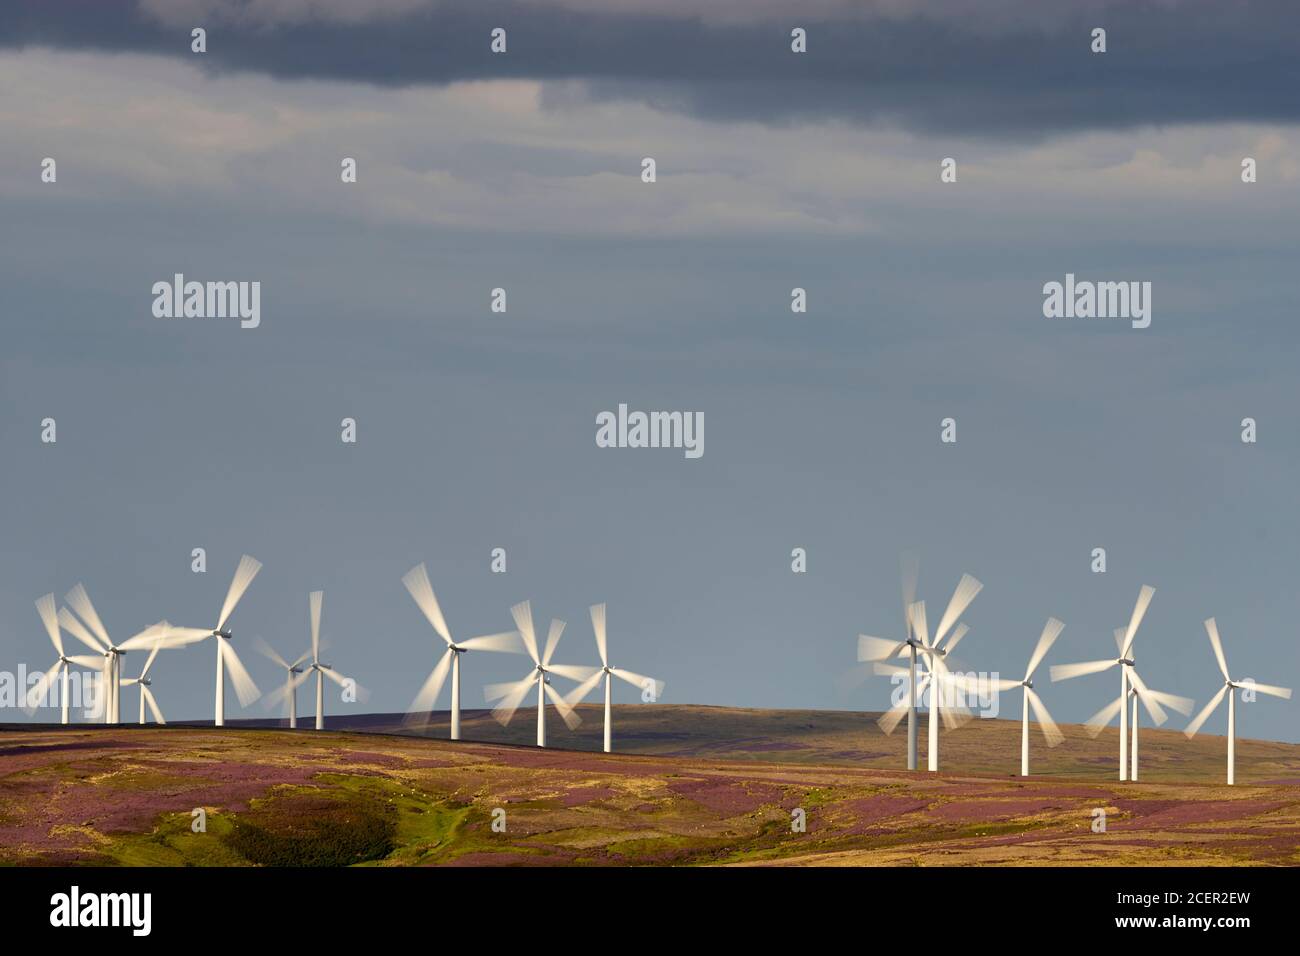 Crystal Rig Wind Farm, Lammermuir Hills, East Lothian, Scotland. Stock Photo